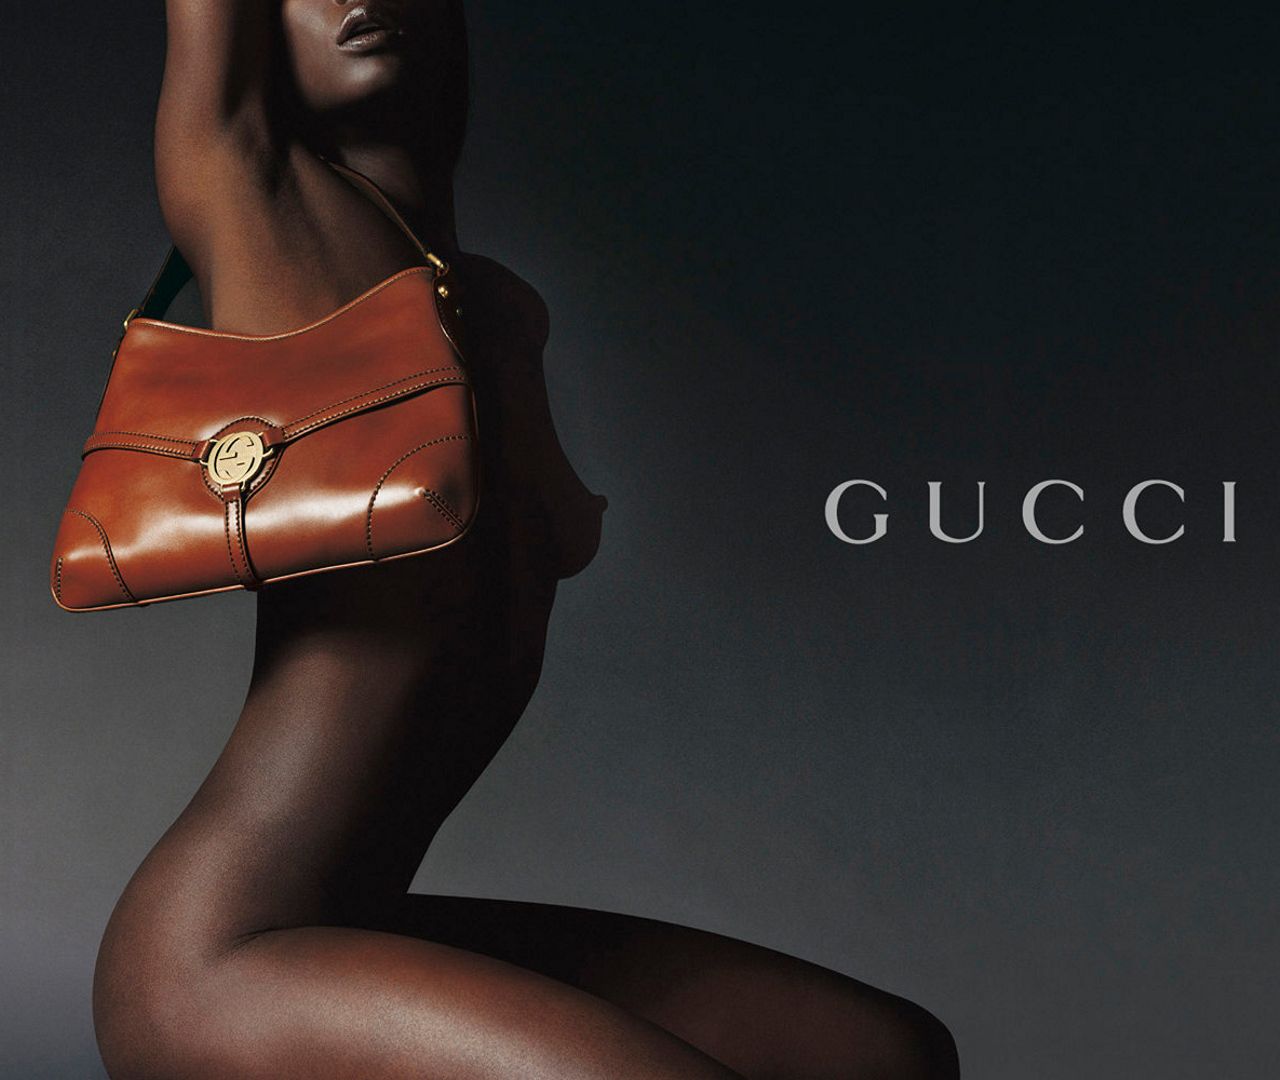 реклама сумочки итальянского дома мод Гуччи (Gucci), эротическая реклама